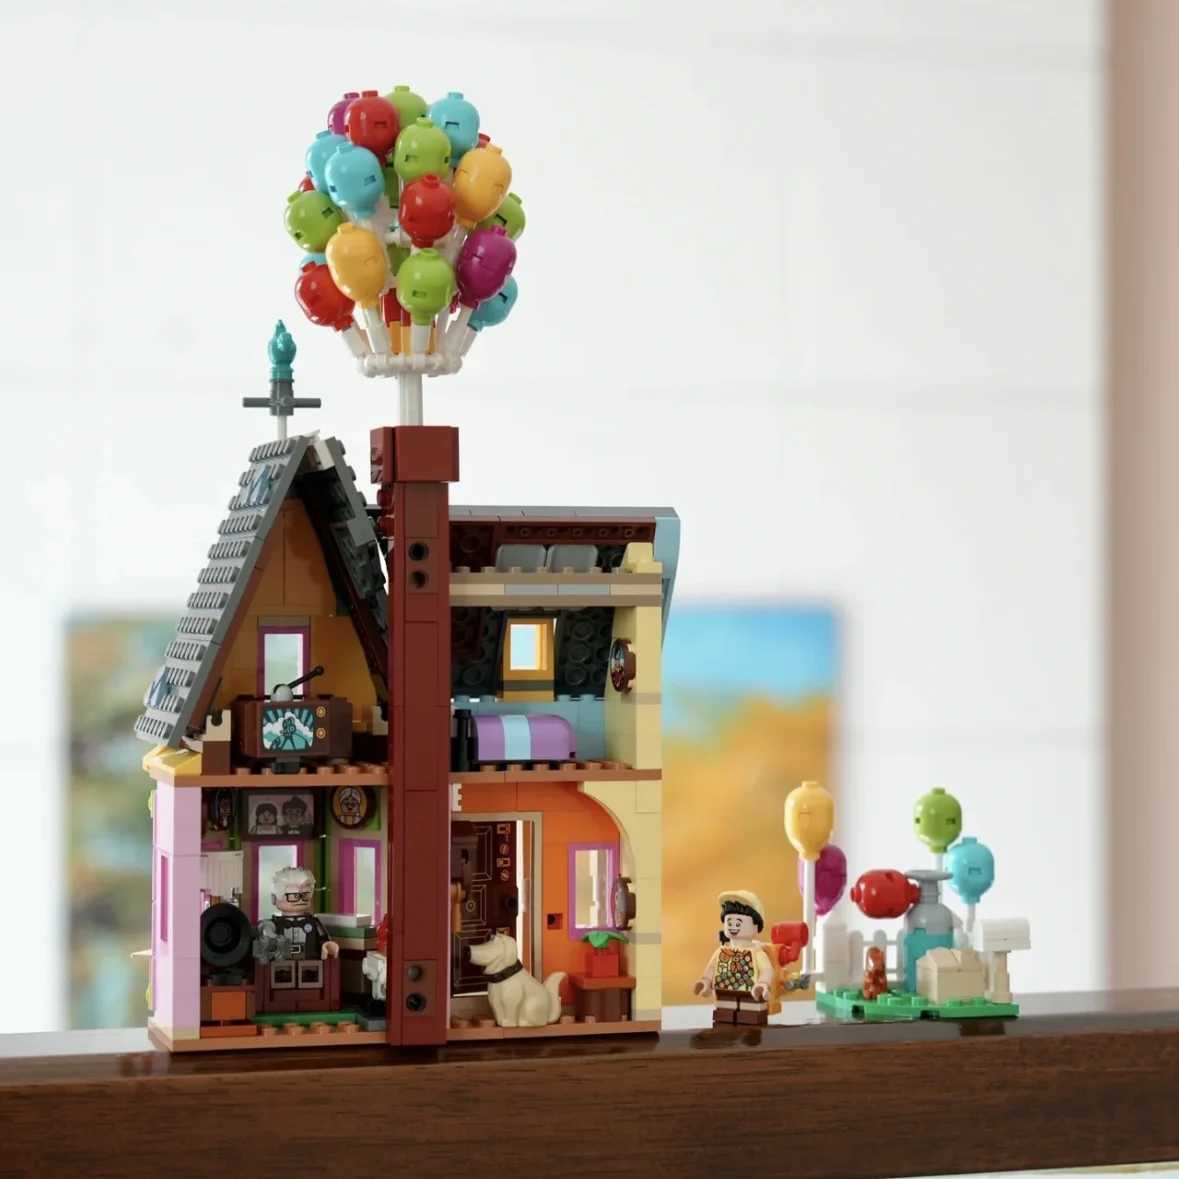 مركبة Toys City Expert Flying Balloon Up House Tensegrity Sculptures Modular Building Builds Bricks Friends Friends 43217 Toy for Kidsl231114